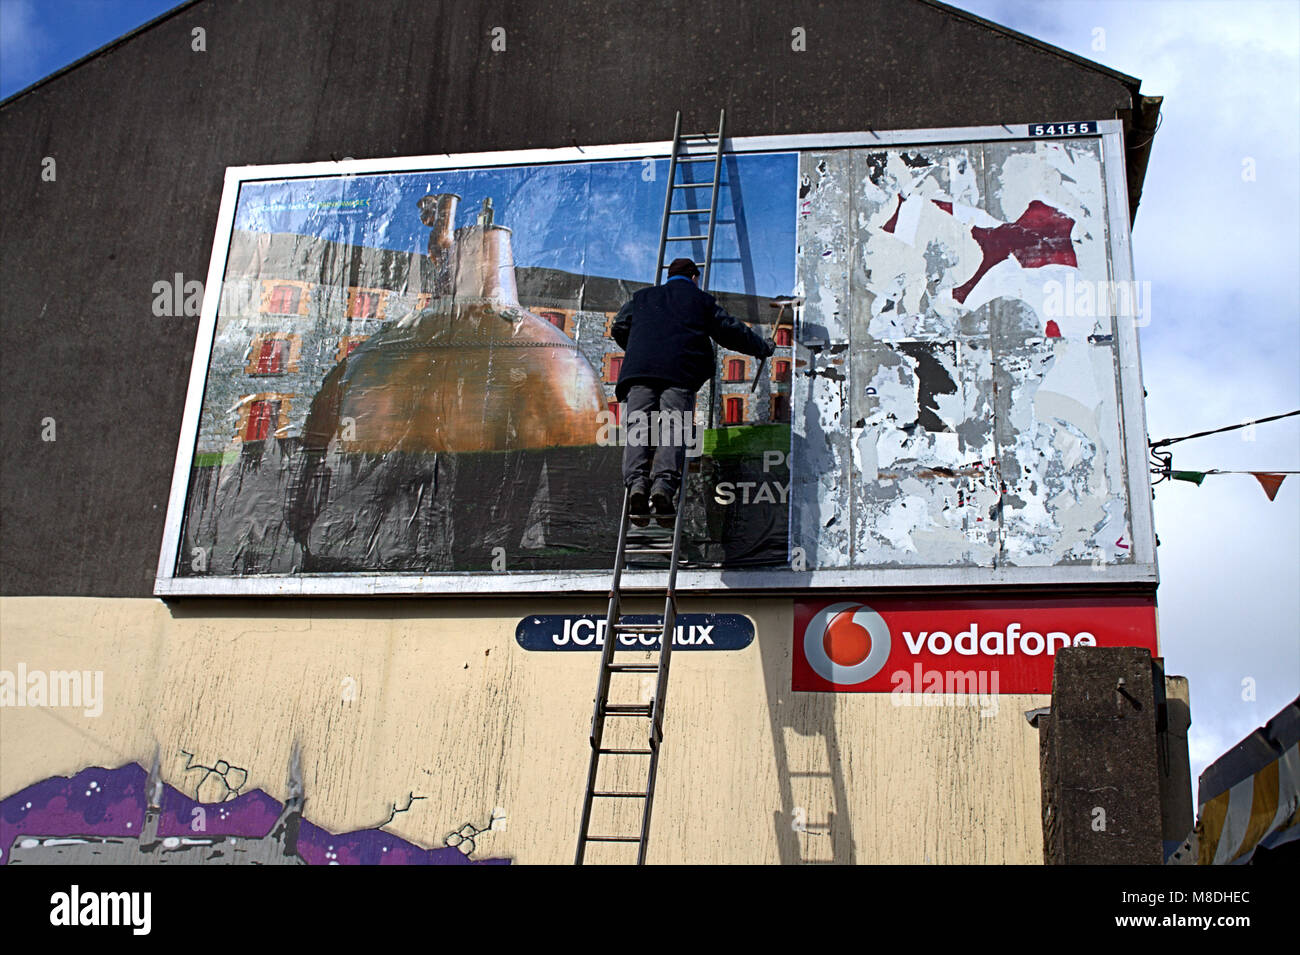 L'uomo una scaletta mettendo su un nuovo cartellone pubblicitario, affissioni di whisky jamesons un famoso whisky irlandese marca. skibbereen, Irlanda Foto Stock